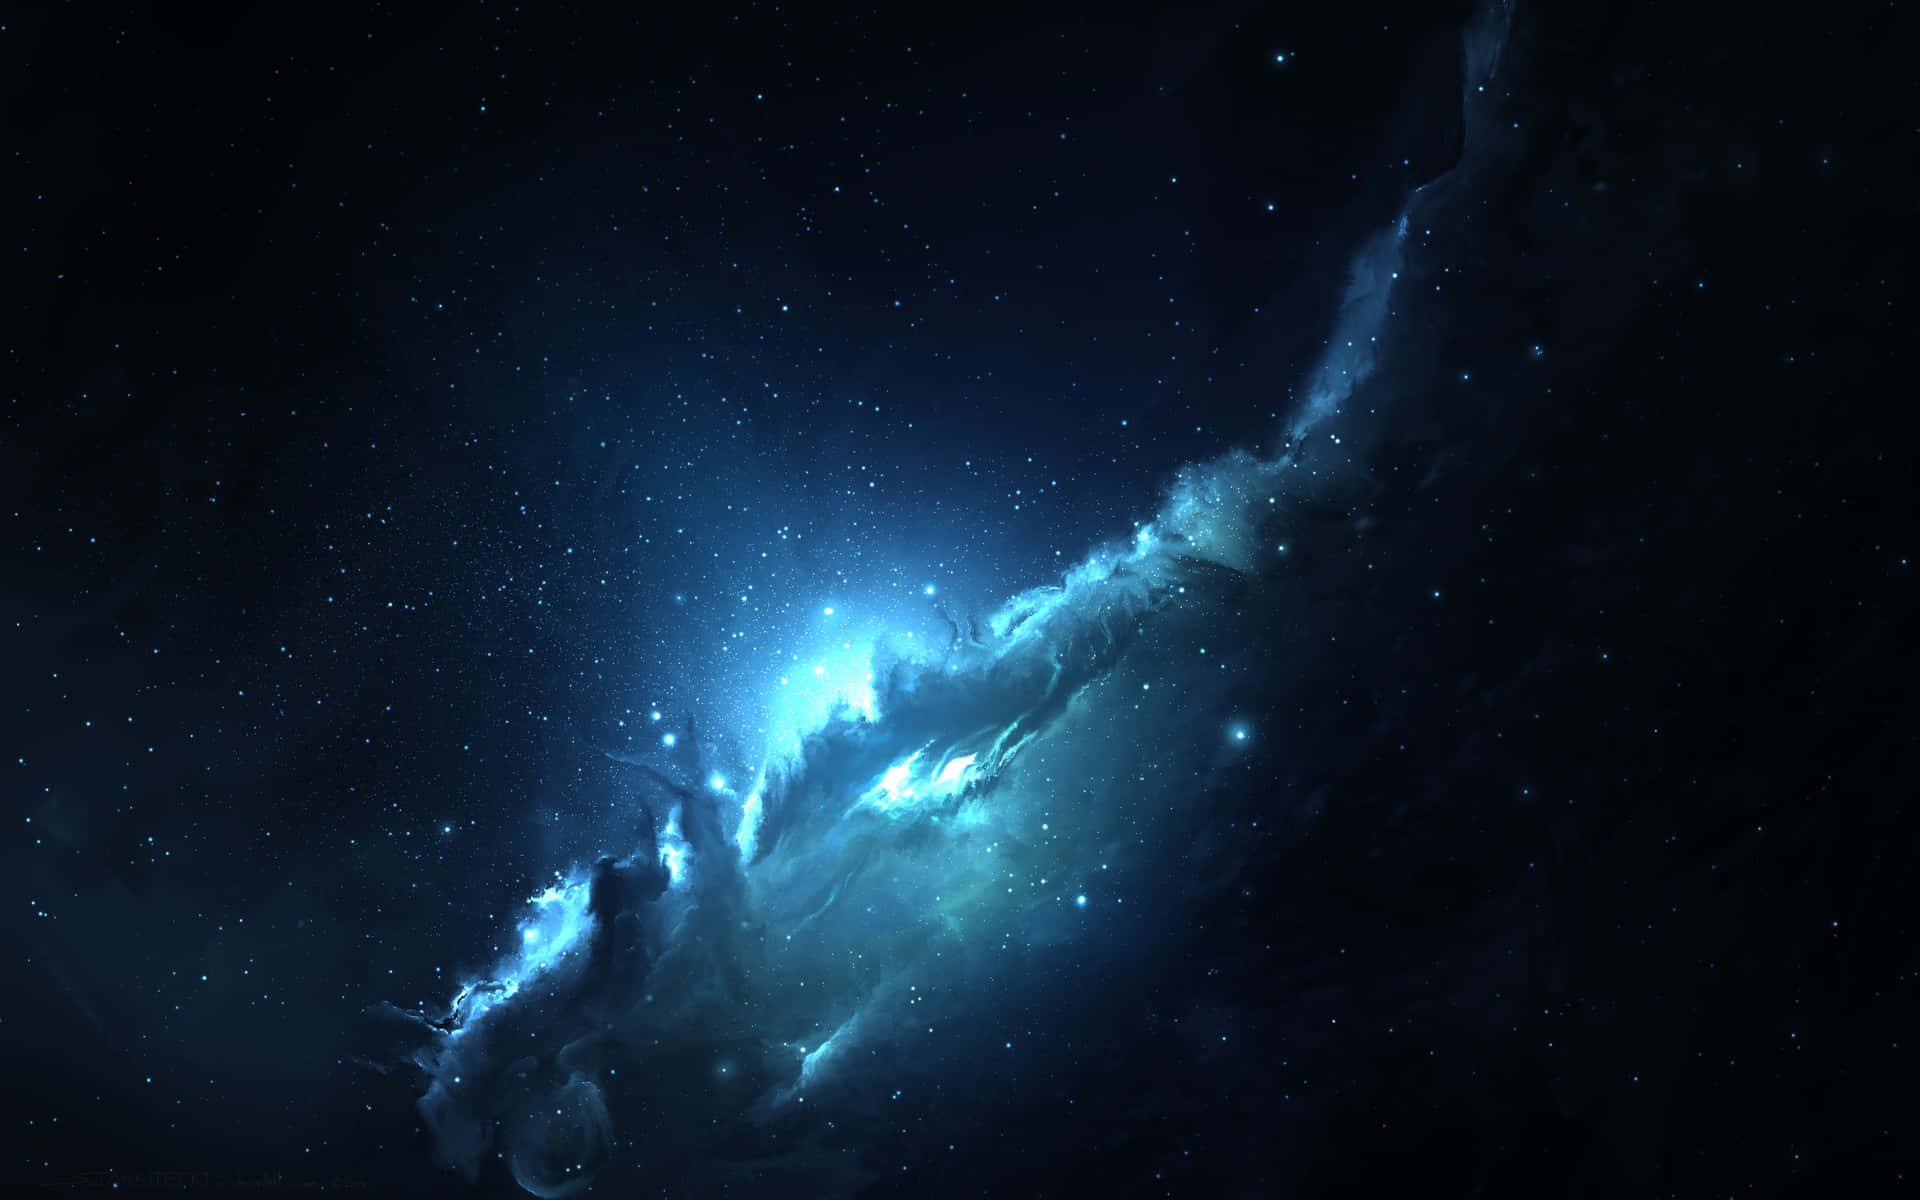 Werfensie Einen Blick In Die Tiefsten Ecken Der Galaxie Mit Diesem Atemberaubenden Foto Einer Weltraumnebel. Wallpaper